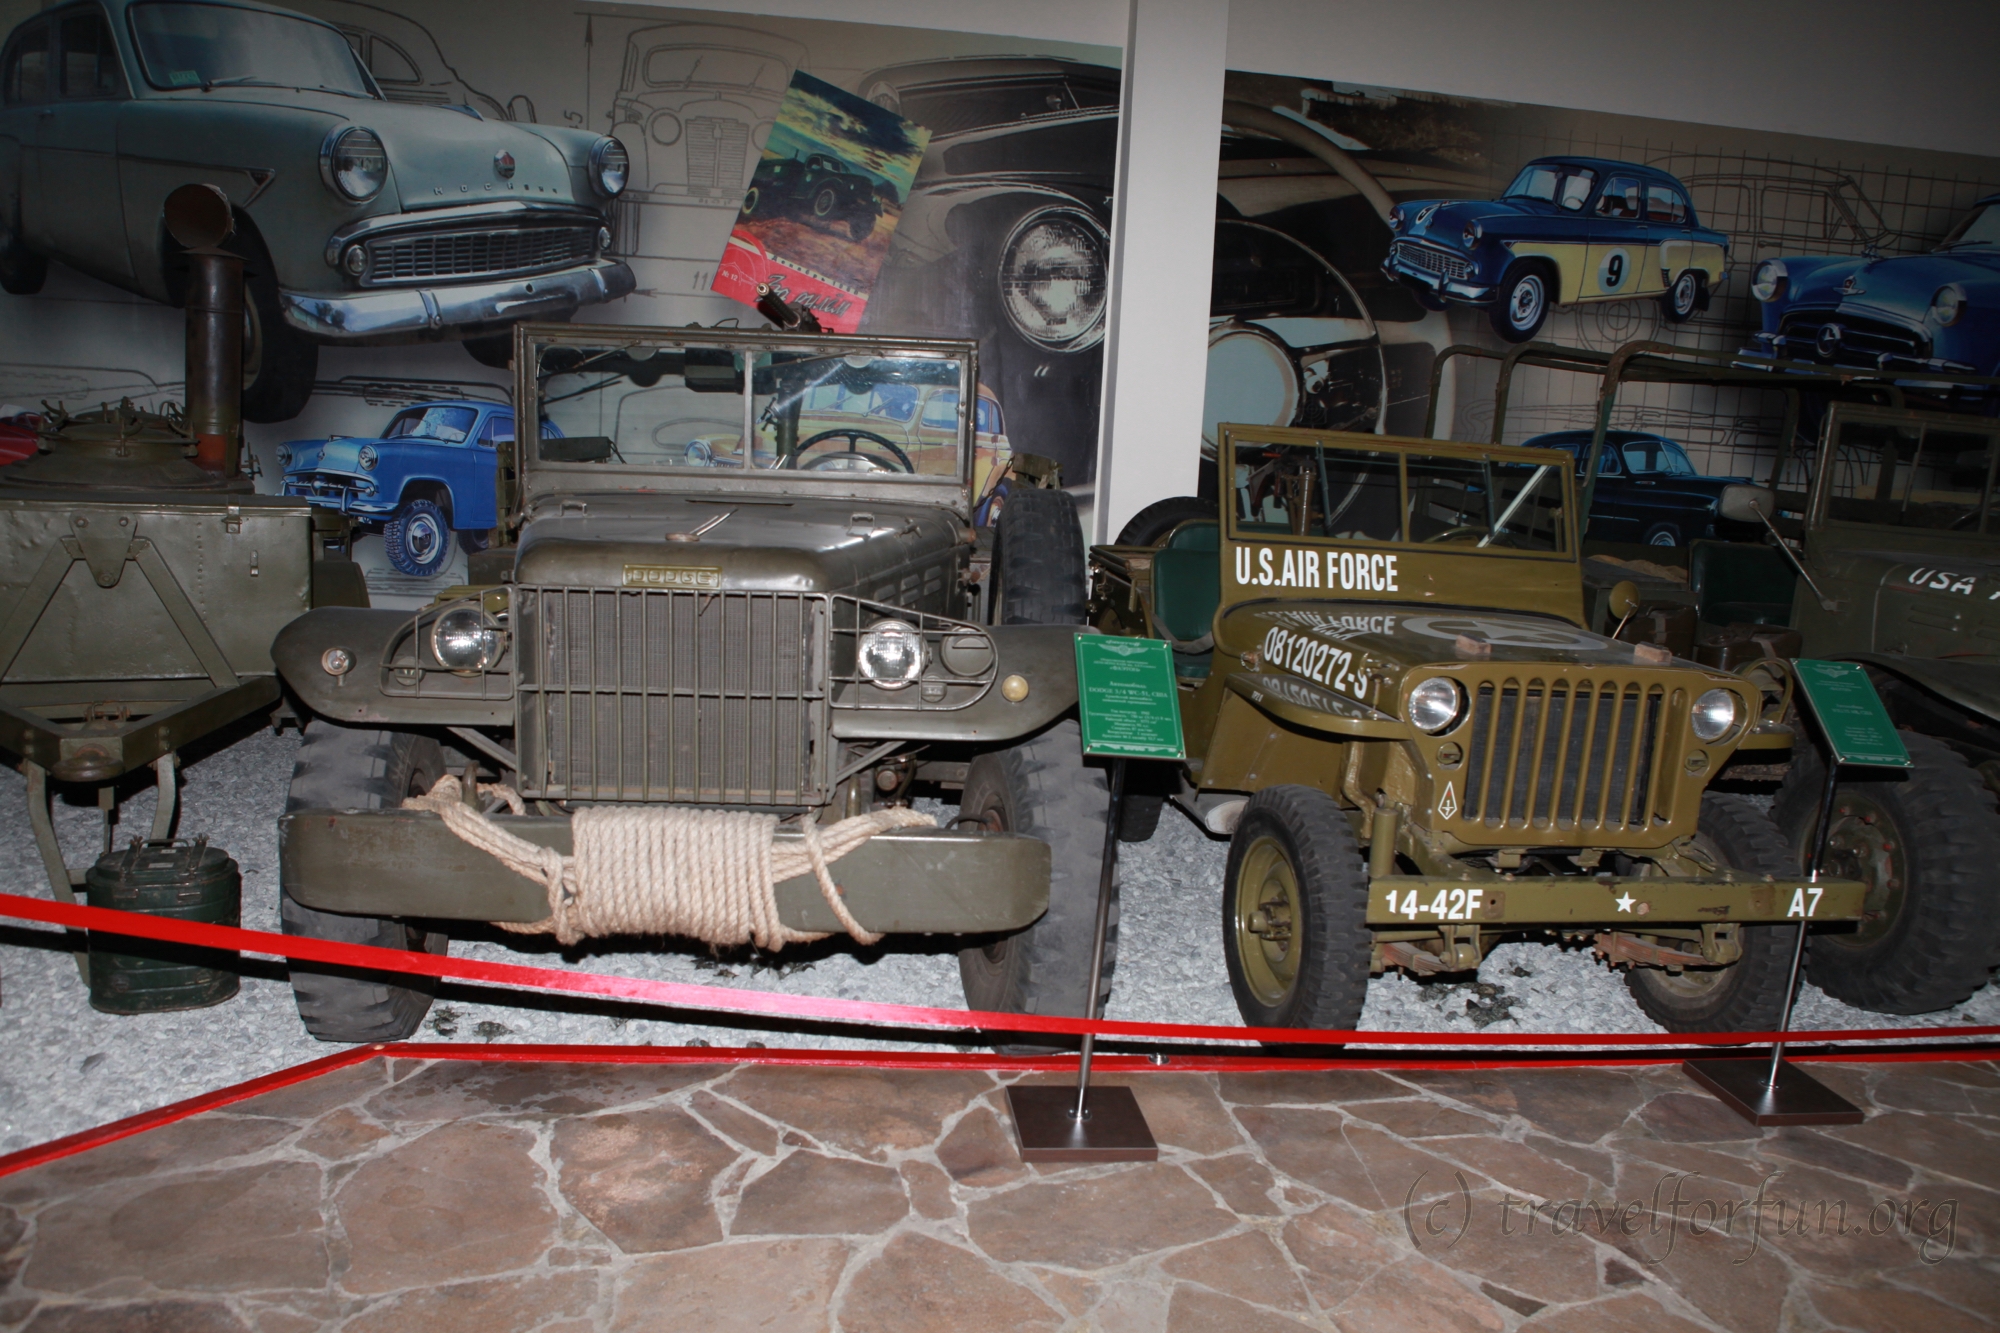 Музей ретро автомобилей в Запорожье